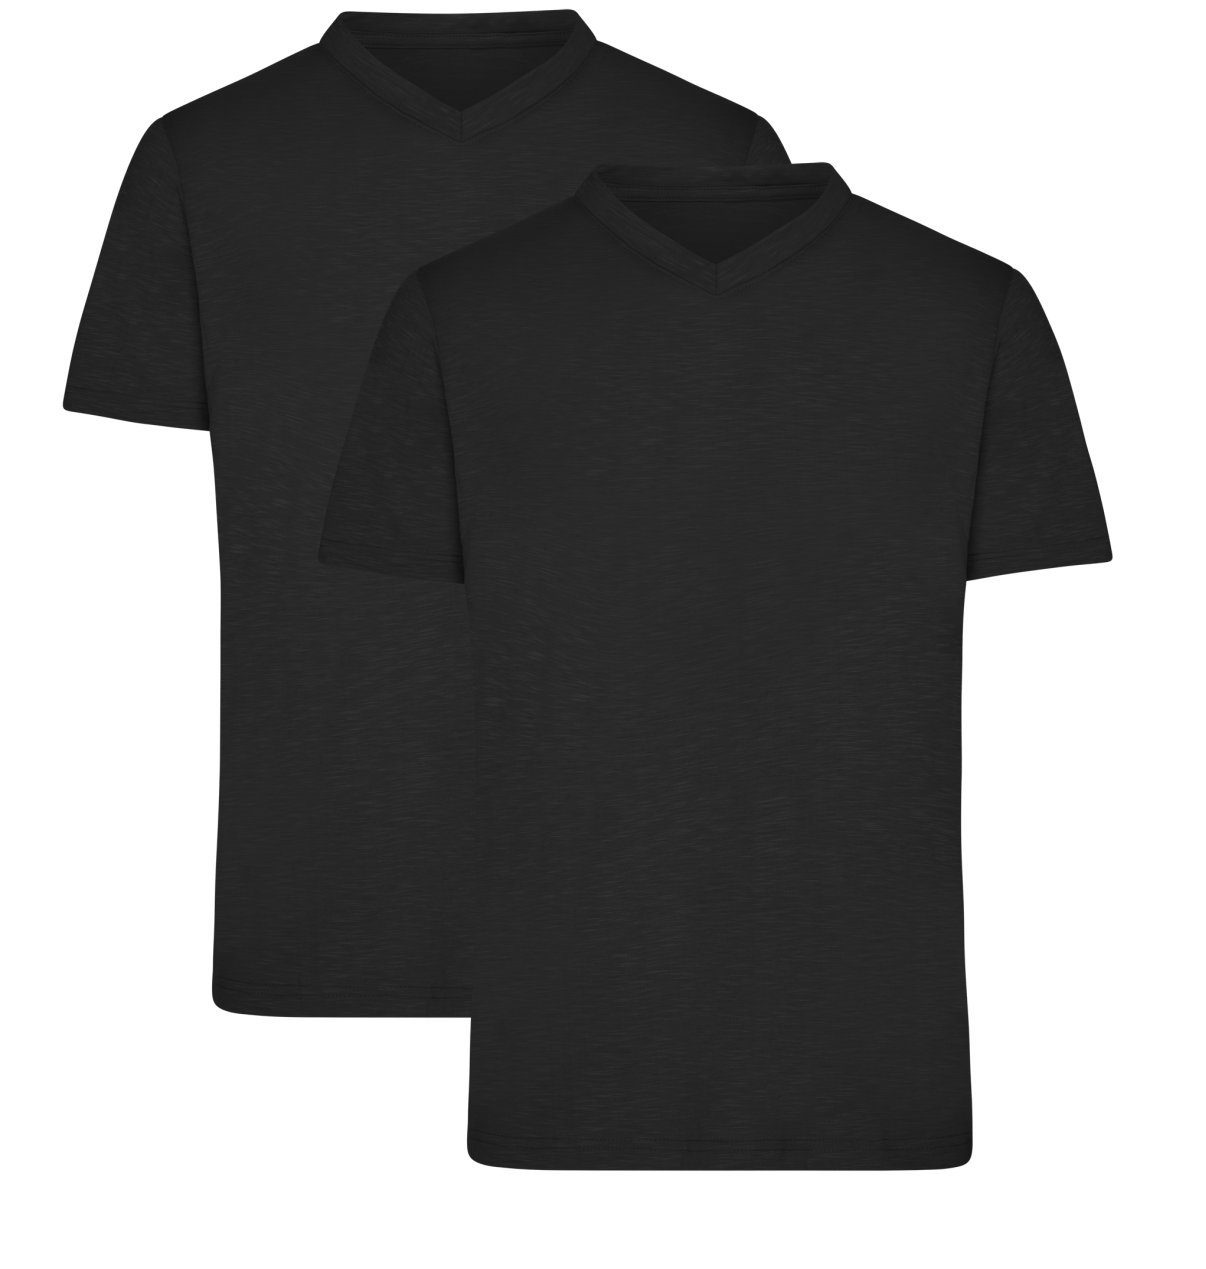 James & Nicholson T-Shirt Doppelpack Herren Funktions T-Shirt für Freizeit und Sport JN750 (Doppelpack, 2 Stück) Atmungsaktiv, feuchtigkeitsregulierend und schnelltrocknend black